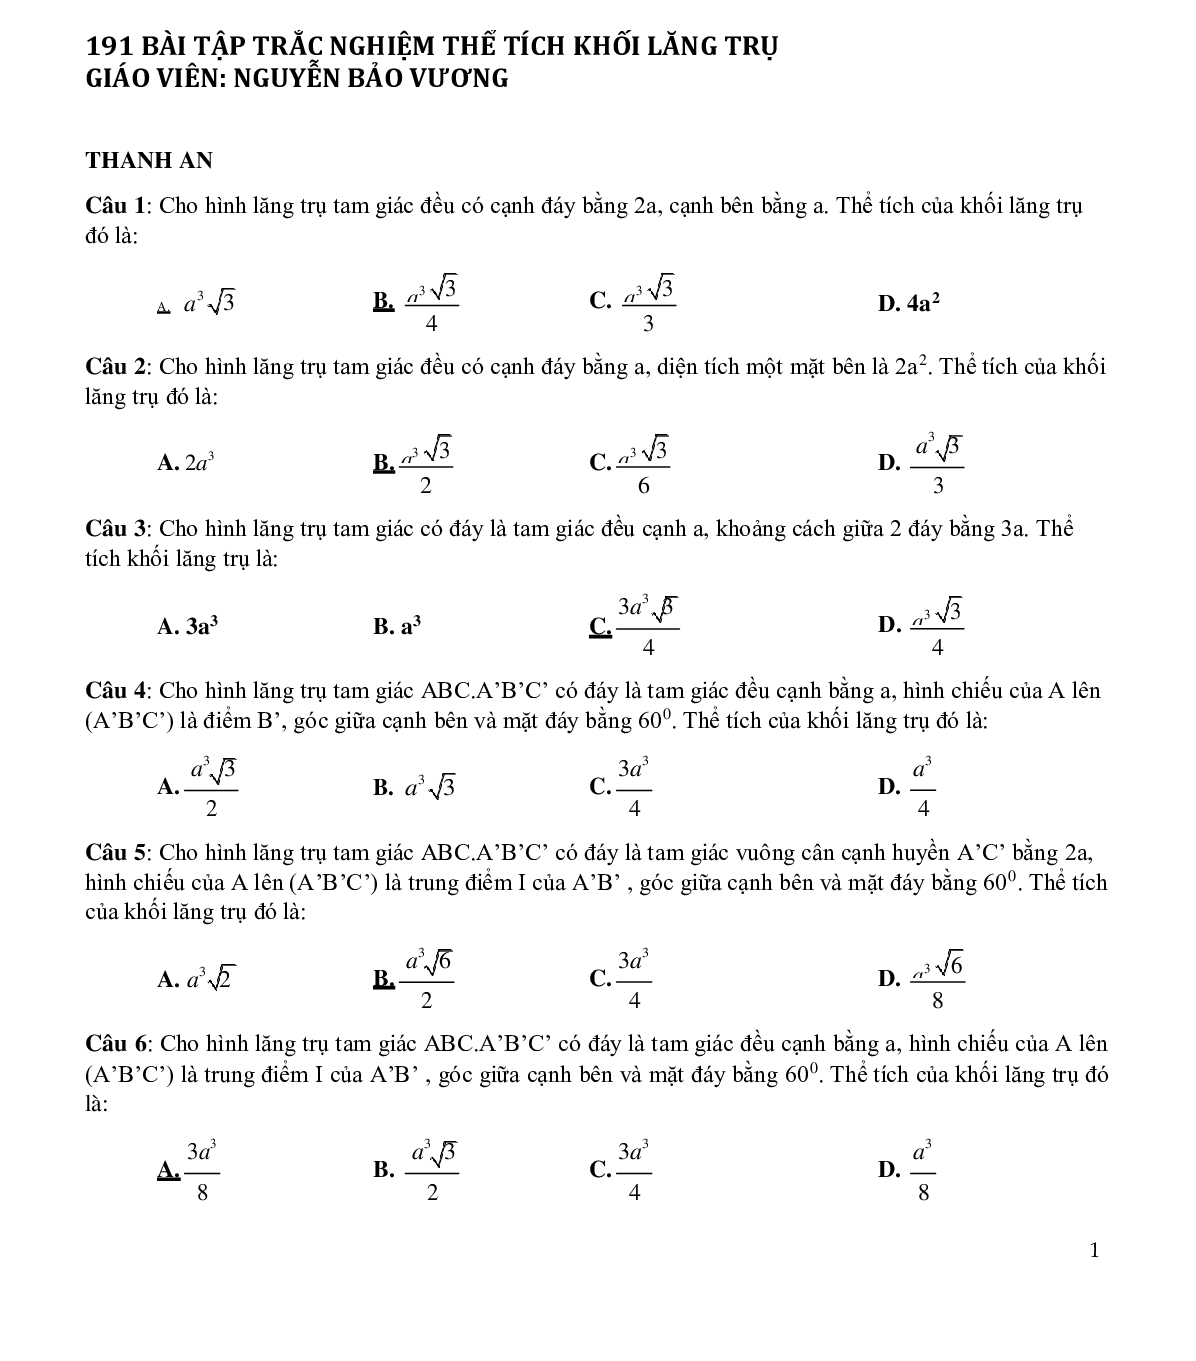 191 bài tập trắc nghiệm thể tích khối lăng trụ (trang 3)